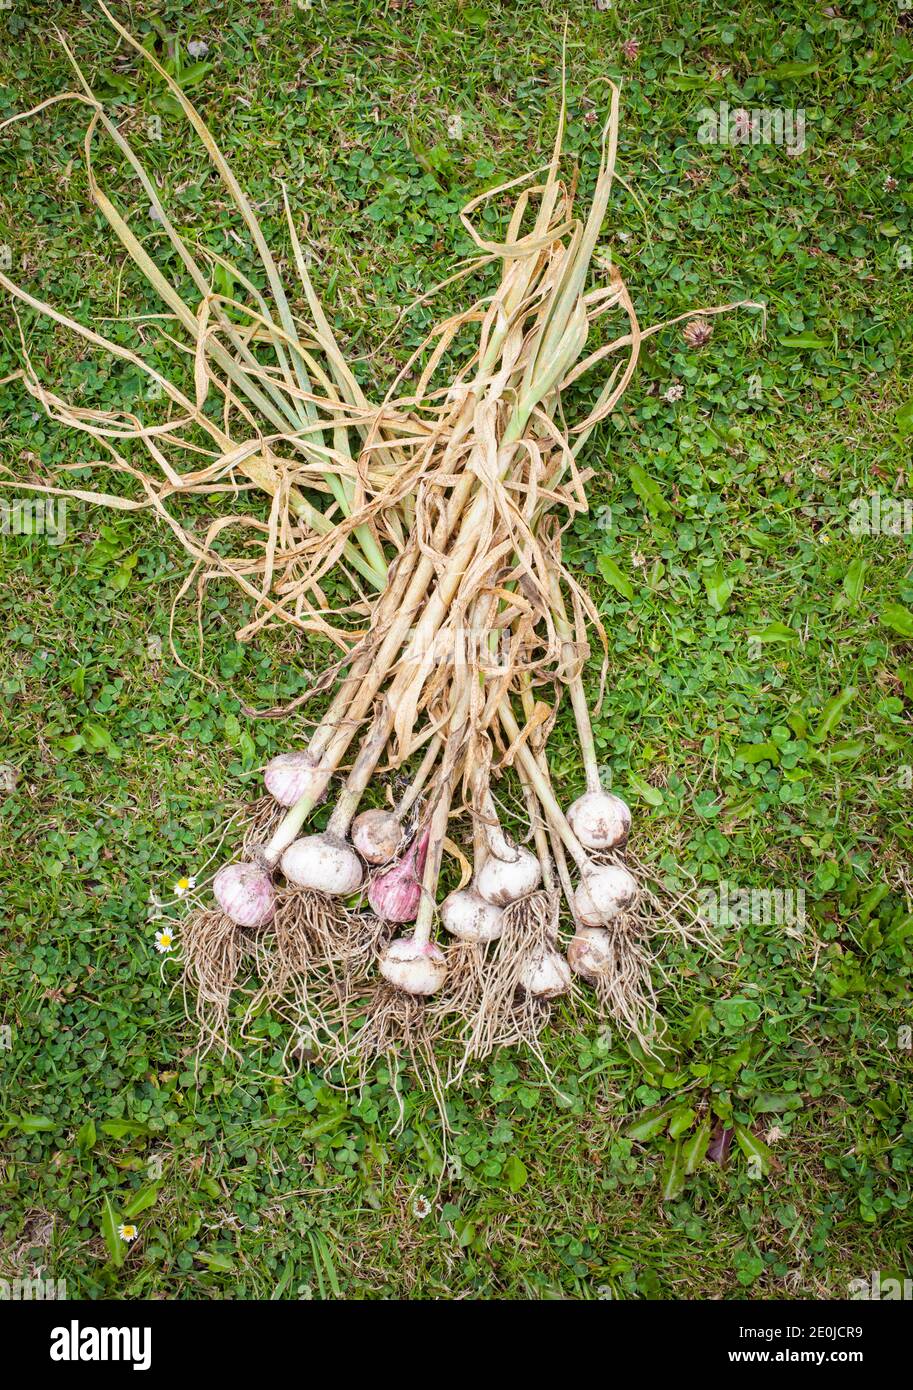 Mein Hausgarten Bio-Produkte. Drei Arten von Knoblauch - Elefant (Allium ampeloprasum var. ampeloprasum), Solo (Allium sativum) und normalen Knoblauch. Stockfoto